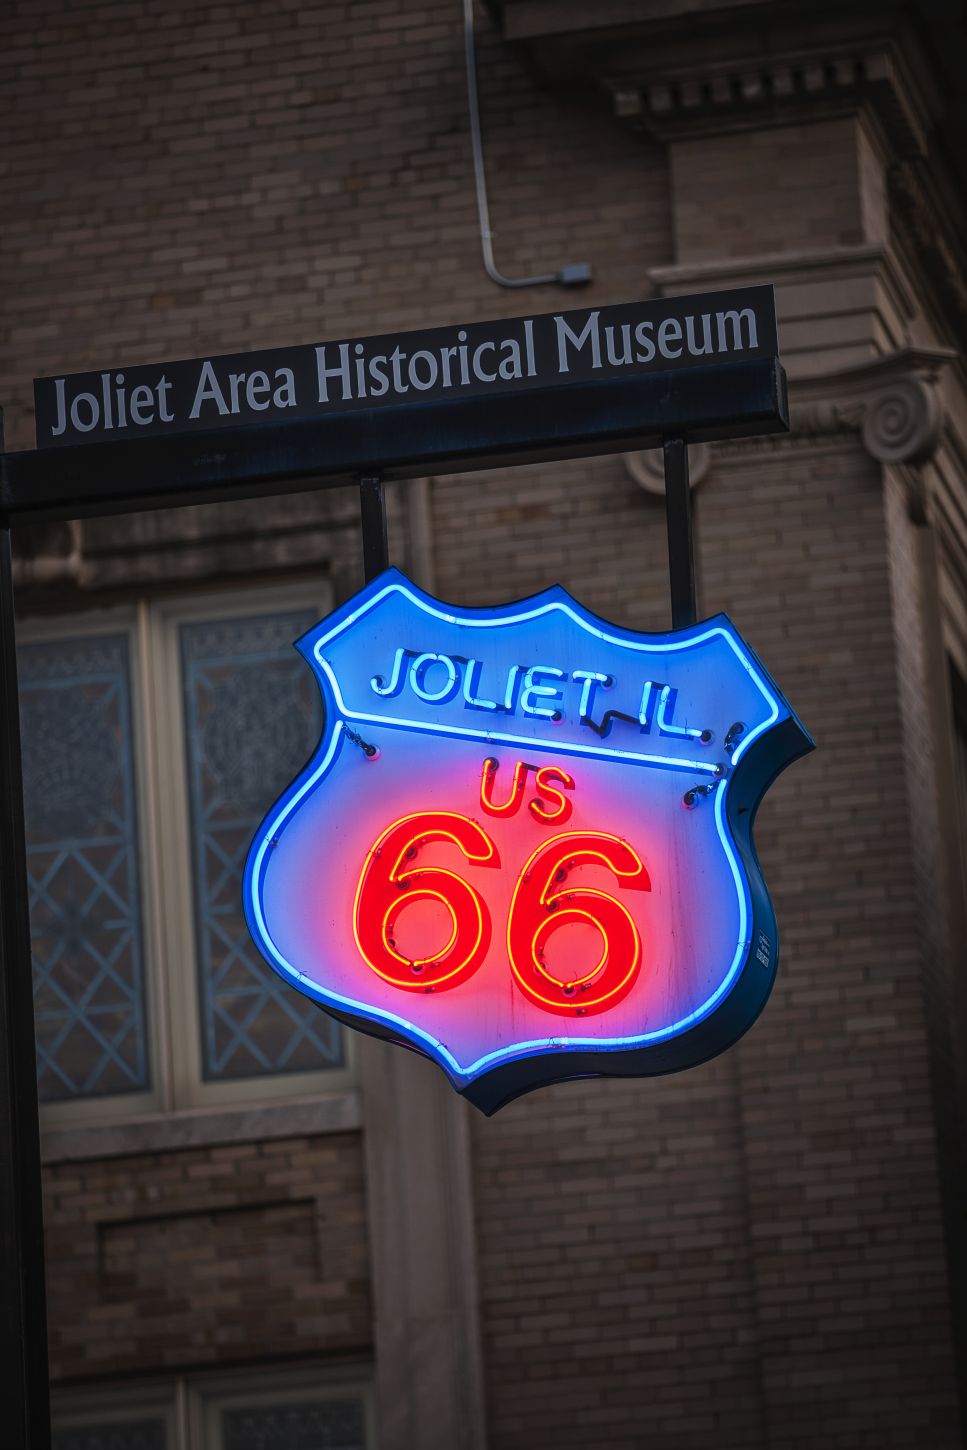 Historical Museum in Joliet